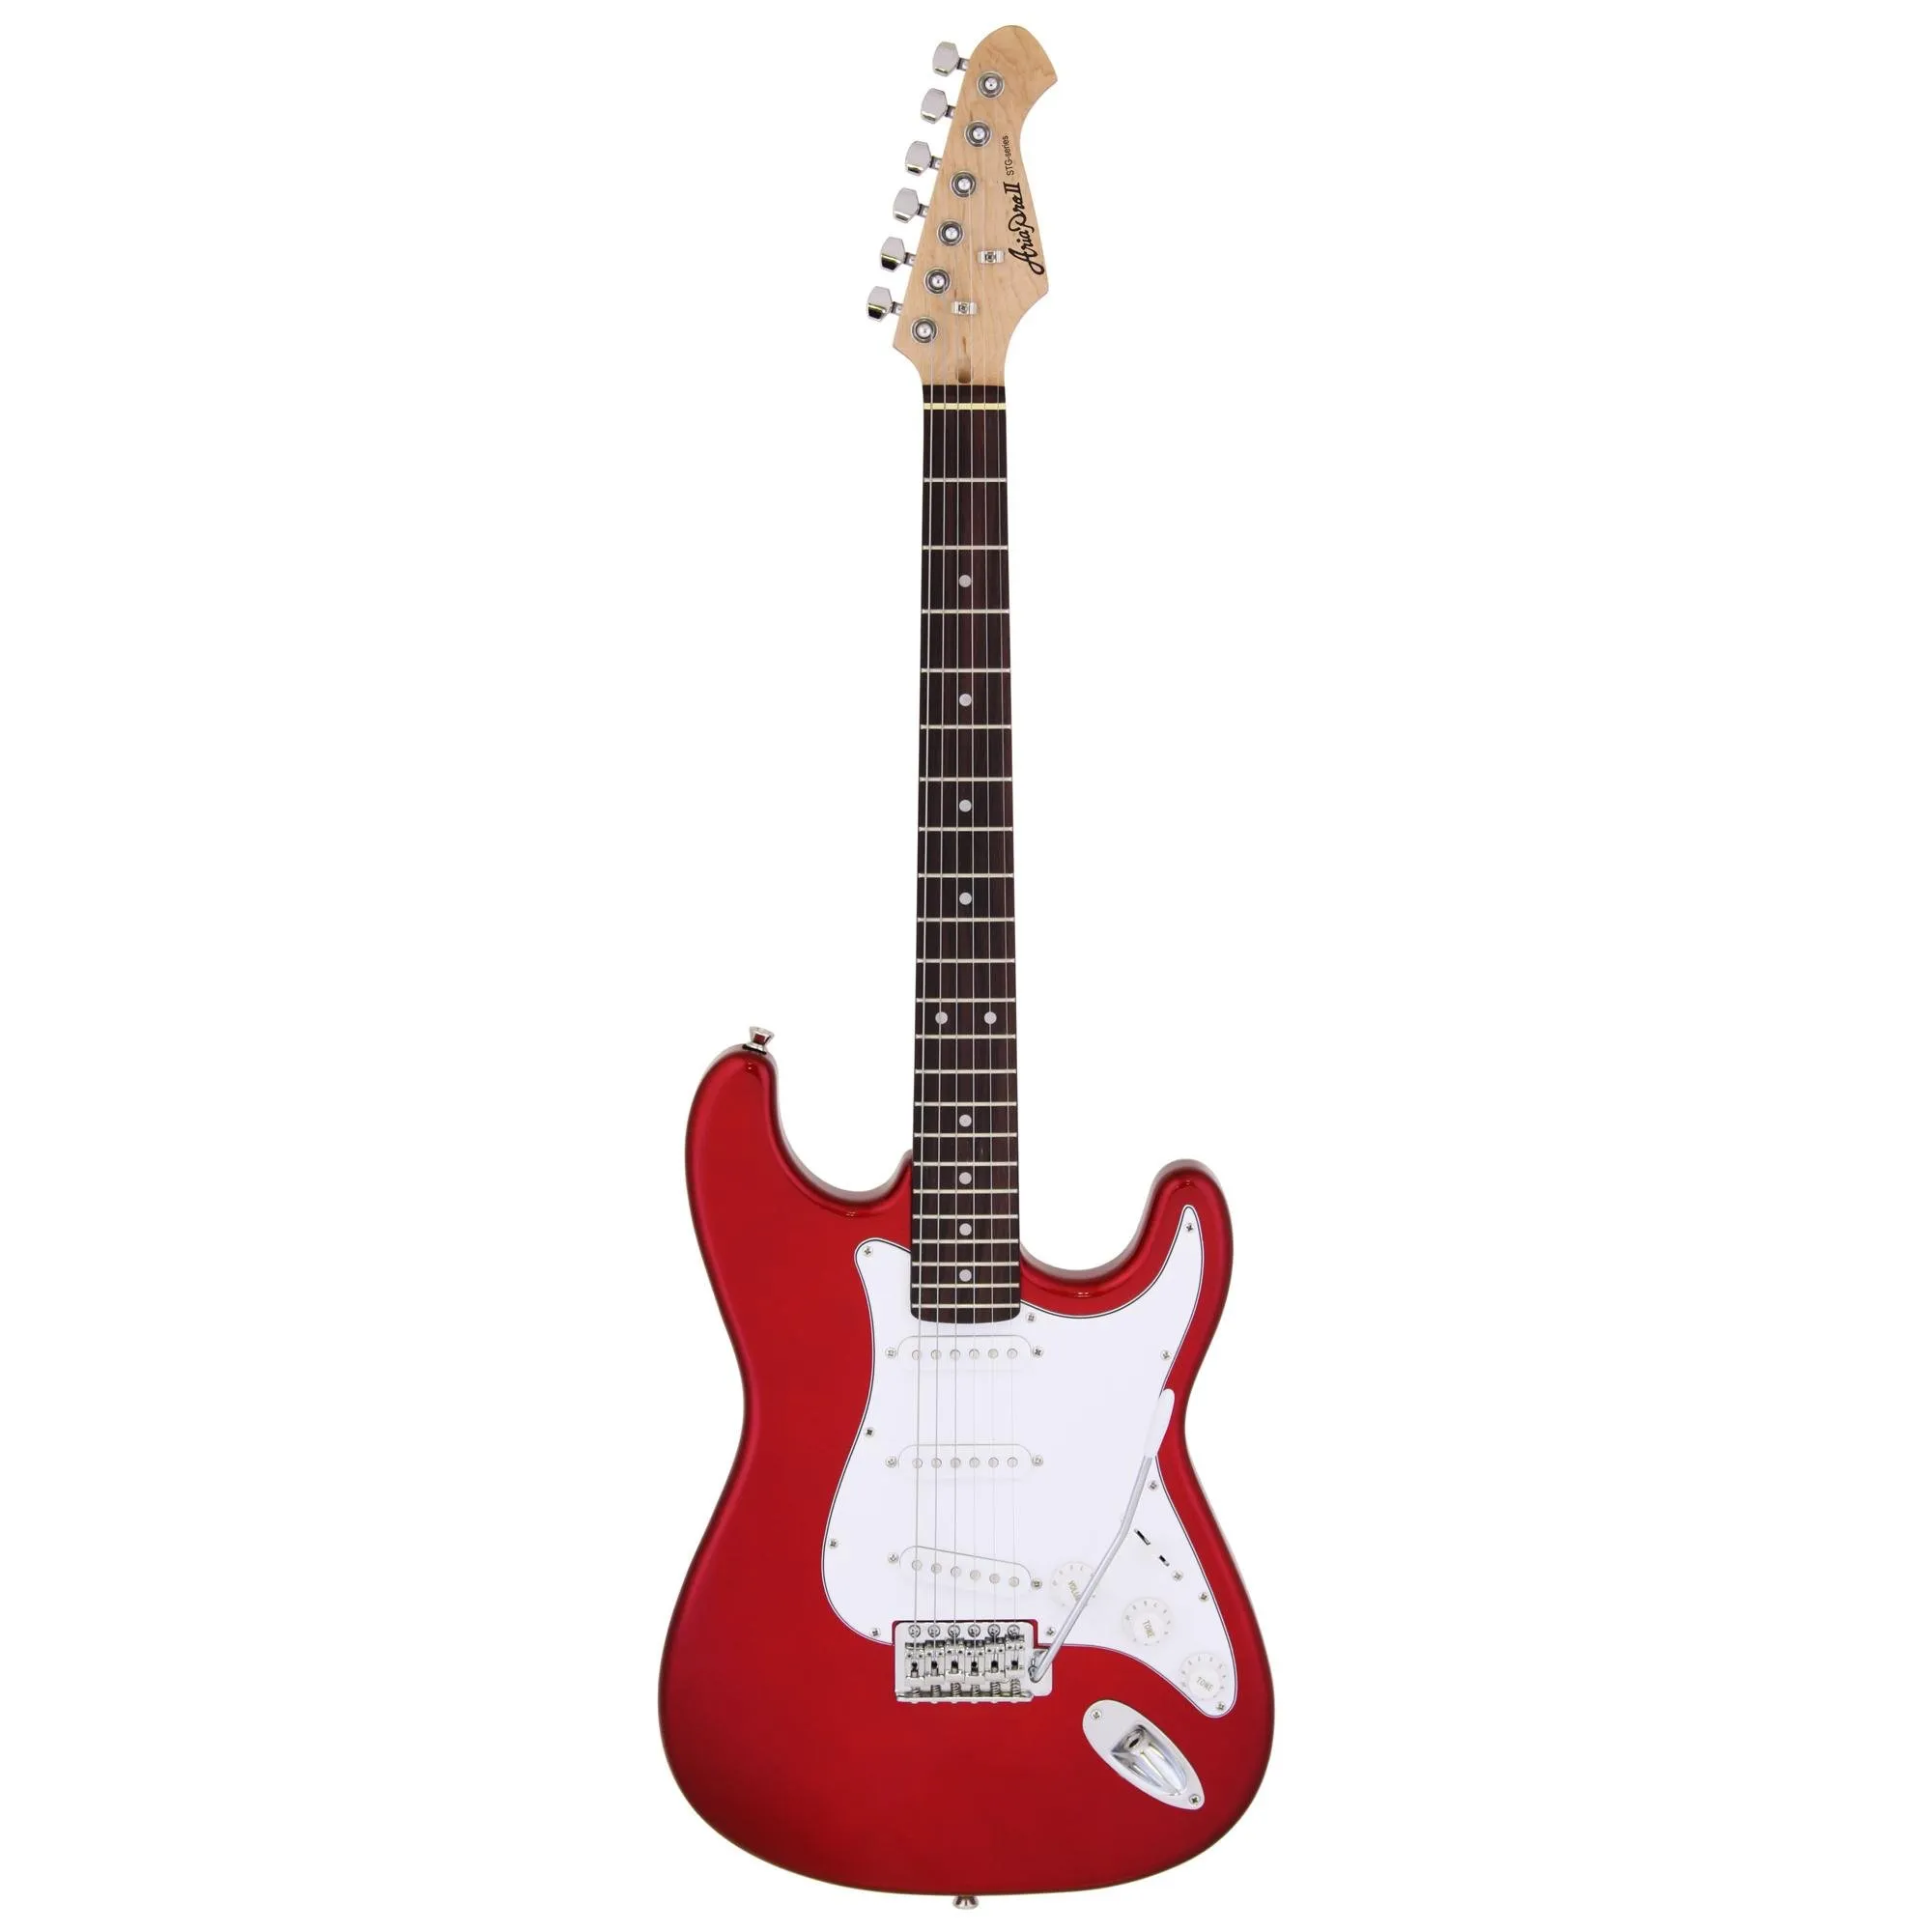 Guitarra Aria STG-003 Candy Apple Red por 1.075,00 à vista no boleto/pix ou parcele em até 12x sem juros. Compre na loja Mundomax!